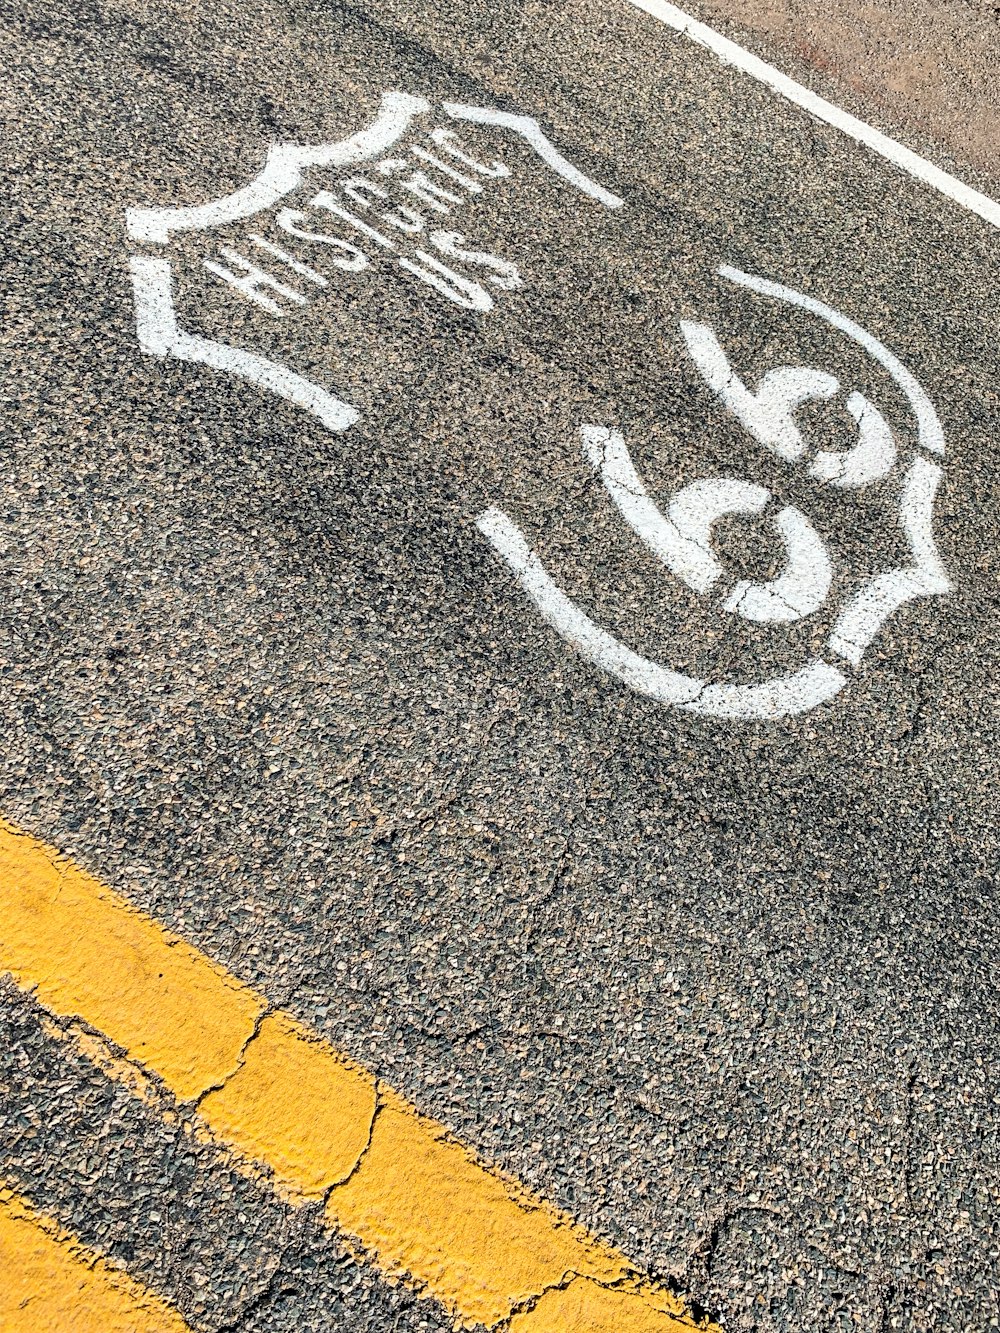 Storico cartello US 66 sulla strada asfaltata grigia durante il giorno